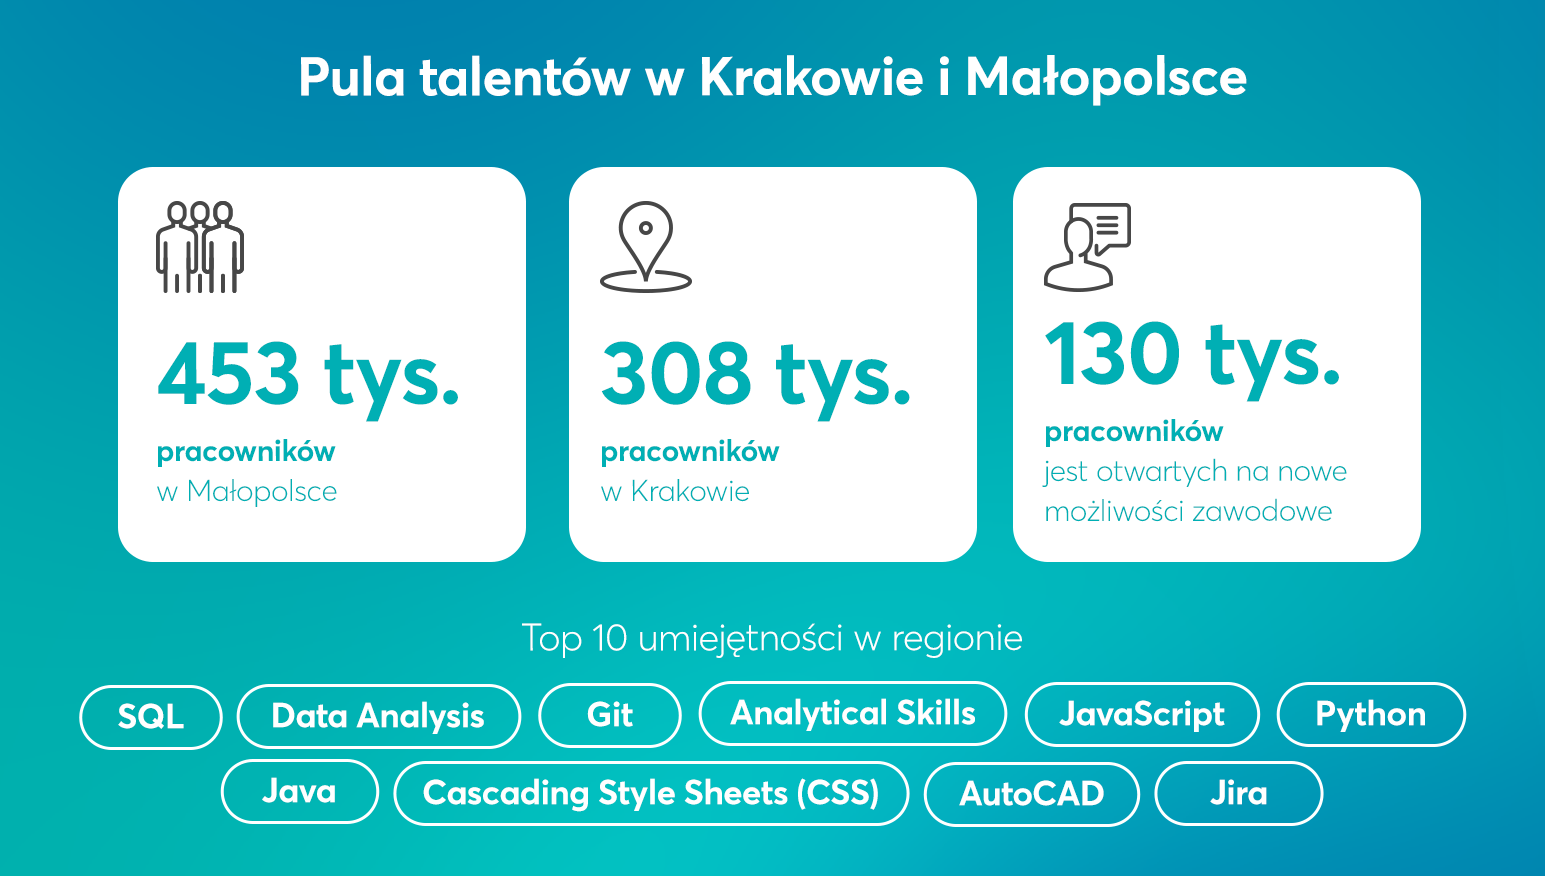 Pula talentów w Krakowie i Małopolsce - infografika